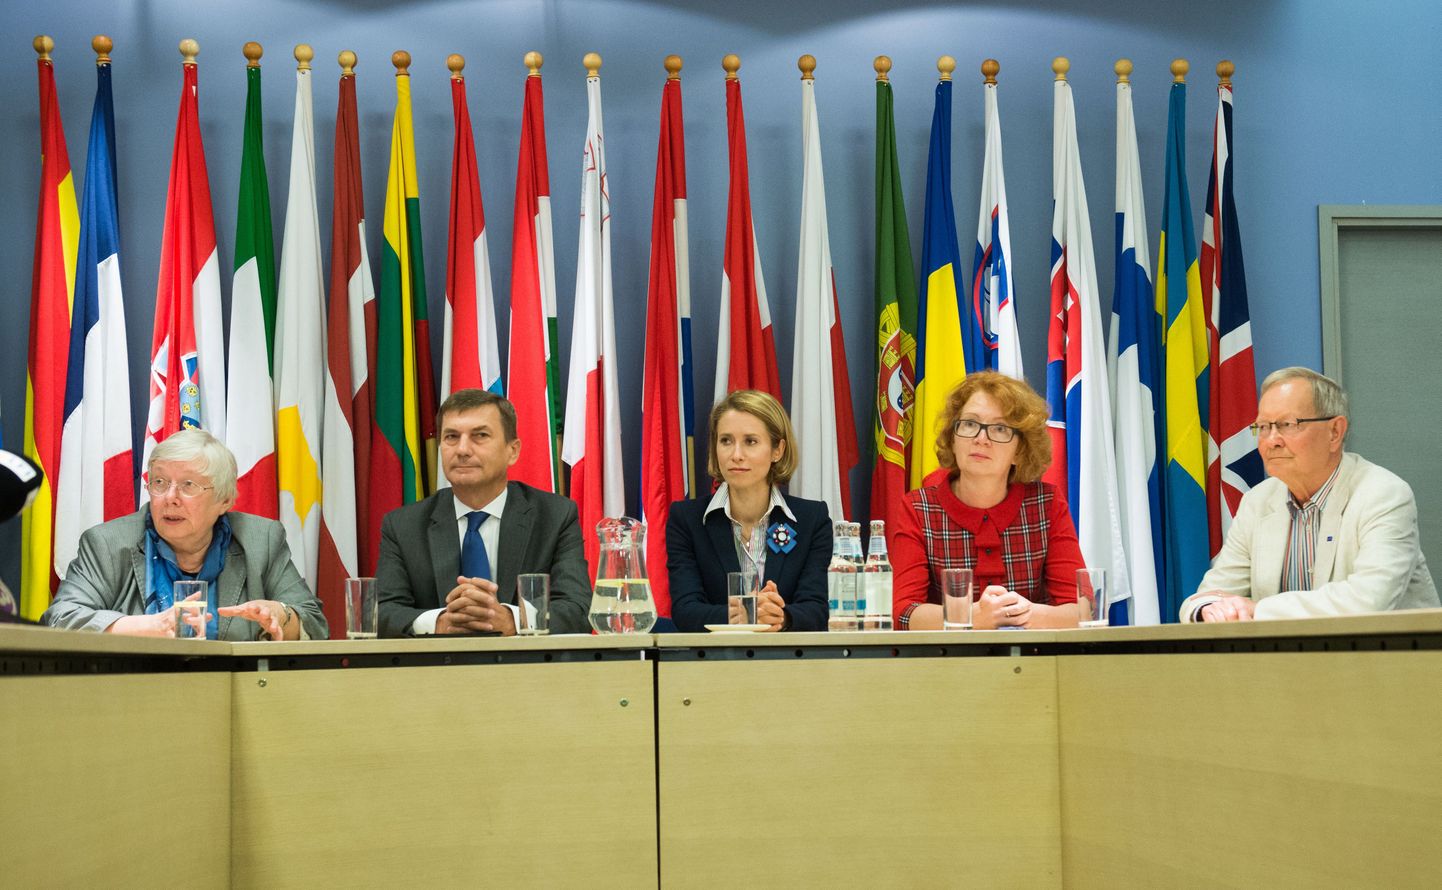 Eesti saadikud Euroopa Parlamendis, Andrus Ansipi asemel on nüüd EP-s Urmas Paet